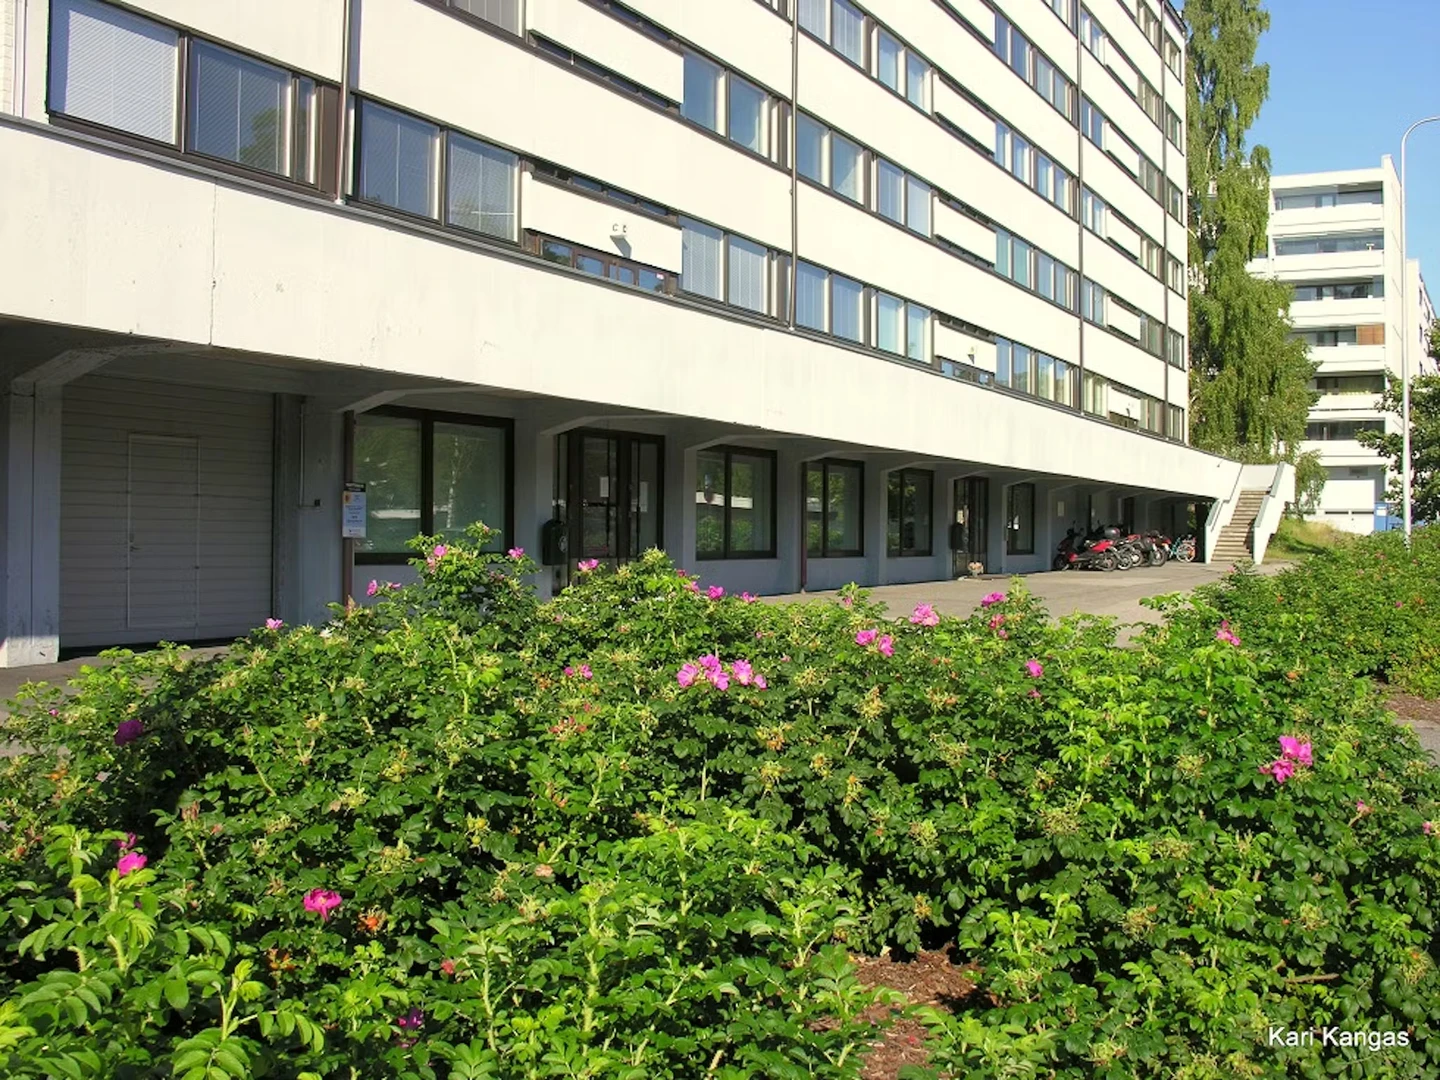 Alojamiento situado en el centro de Espoo